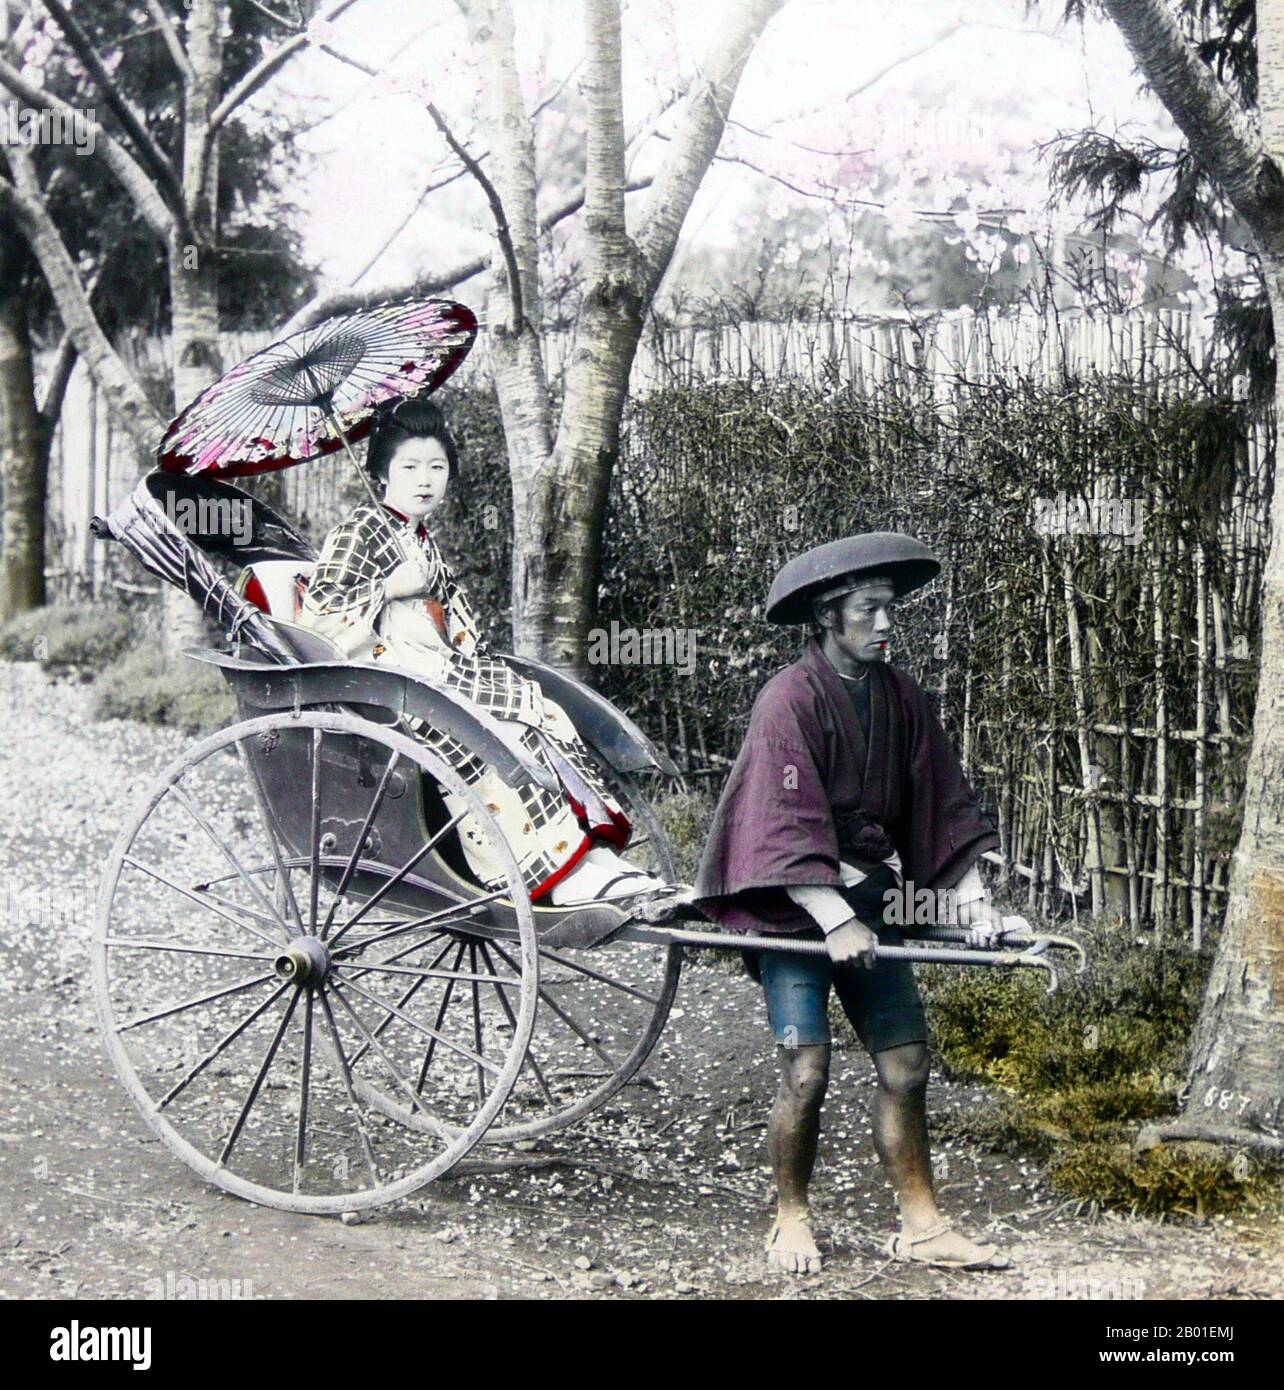 Japon: Geisha tiré dans un pousse-pousse, Enami Nobukuni (1859-1929), c. 1900. T. Enami (Enami Nobukuni) était le nom commercial d'un célèbre photographe de l'époque Meiji. Le T. de son nom commercial est censé avoir représenté Toshi, bien qu'il ne l'ait jamais écrit sur aucun document personnel ou d'affaires. Né à Edo (aujourd'hui Tokyo) pendant l'ère Bakumatsu, Enami a d'abord été étudiant, puis assistant du célèbre photographe et collectionniste, Ogawa Kazumasa. Enami a déménagé à Yokohama, et a ouvert un studio sur Benten-dōri (rue Benten) en 1892. Banque D'Images